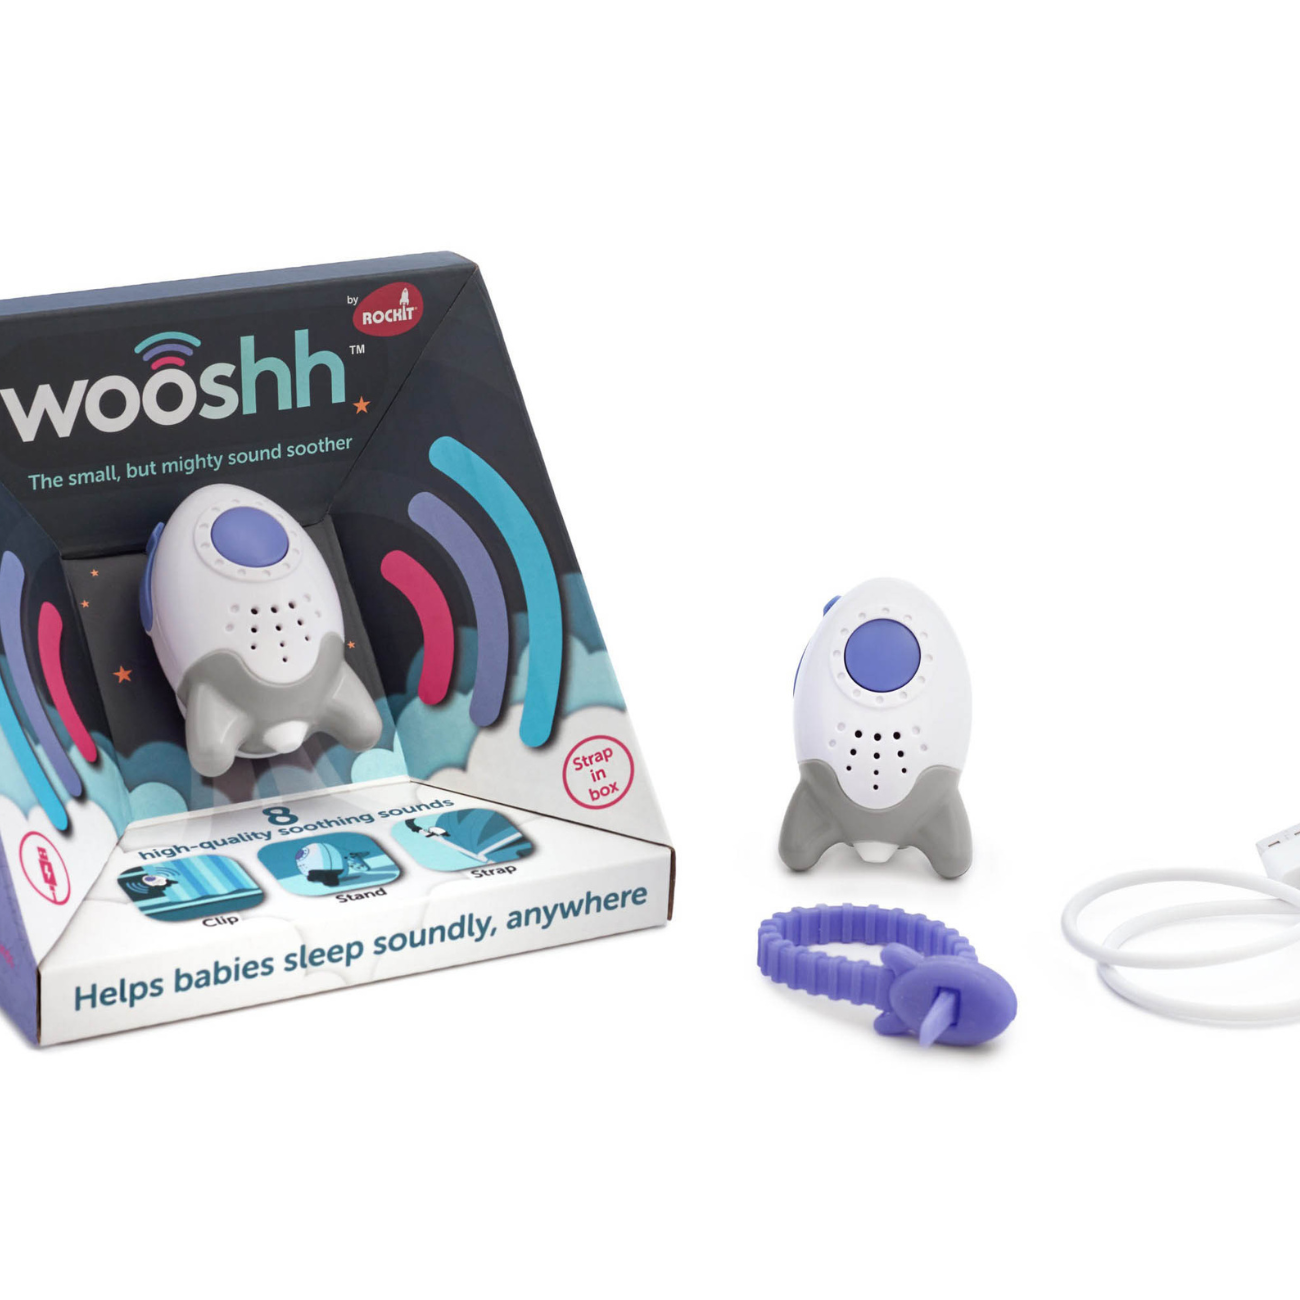 Dispozitiv pentru adormit copiii, Wooshh Rockit, cu sunete si USB